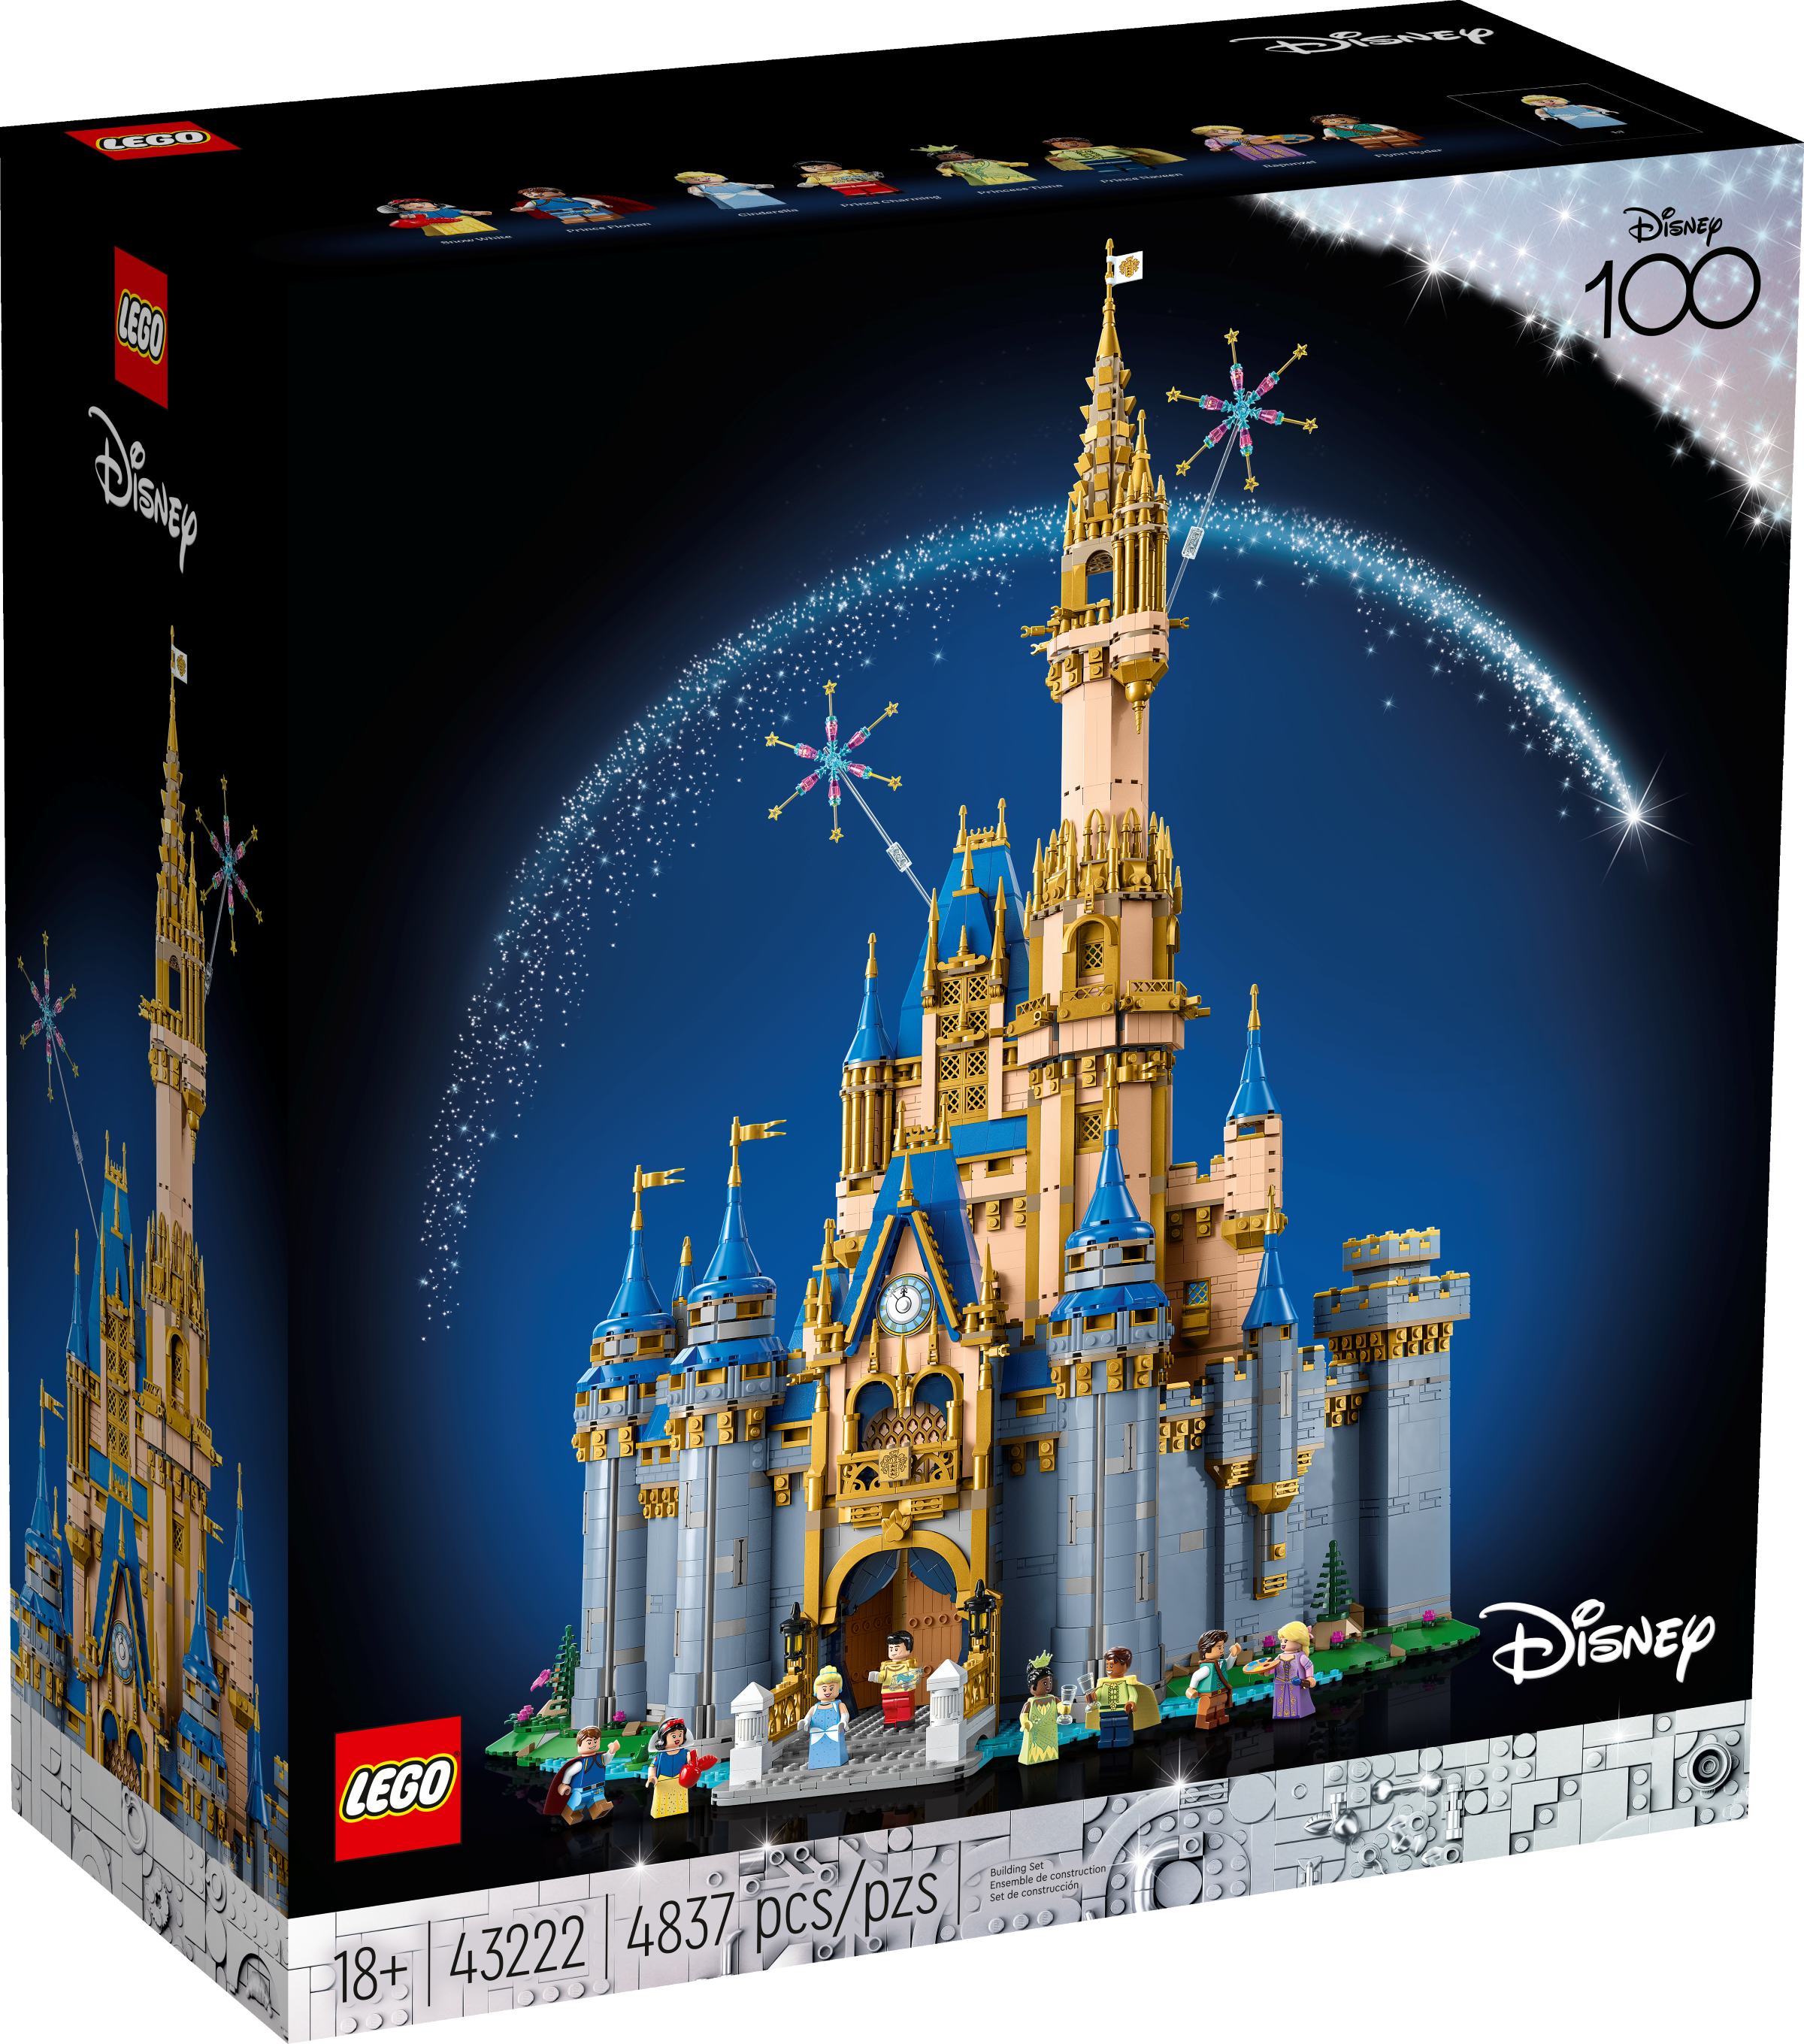 LEGO Disney Disney Schloss (43222) - im GOLDSTIEN.SHOP verfügbar mit Gratisversand ab Schweizer Lager! (5702017424903)